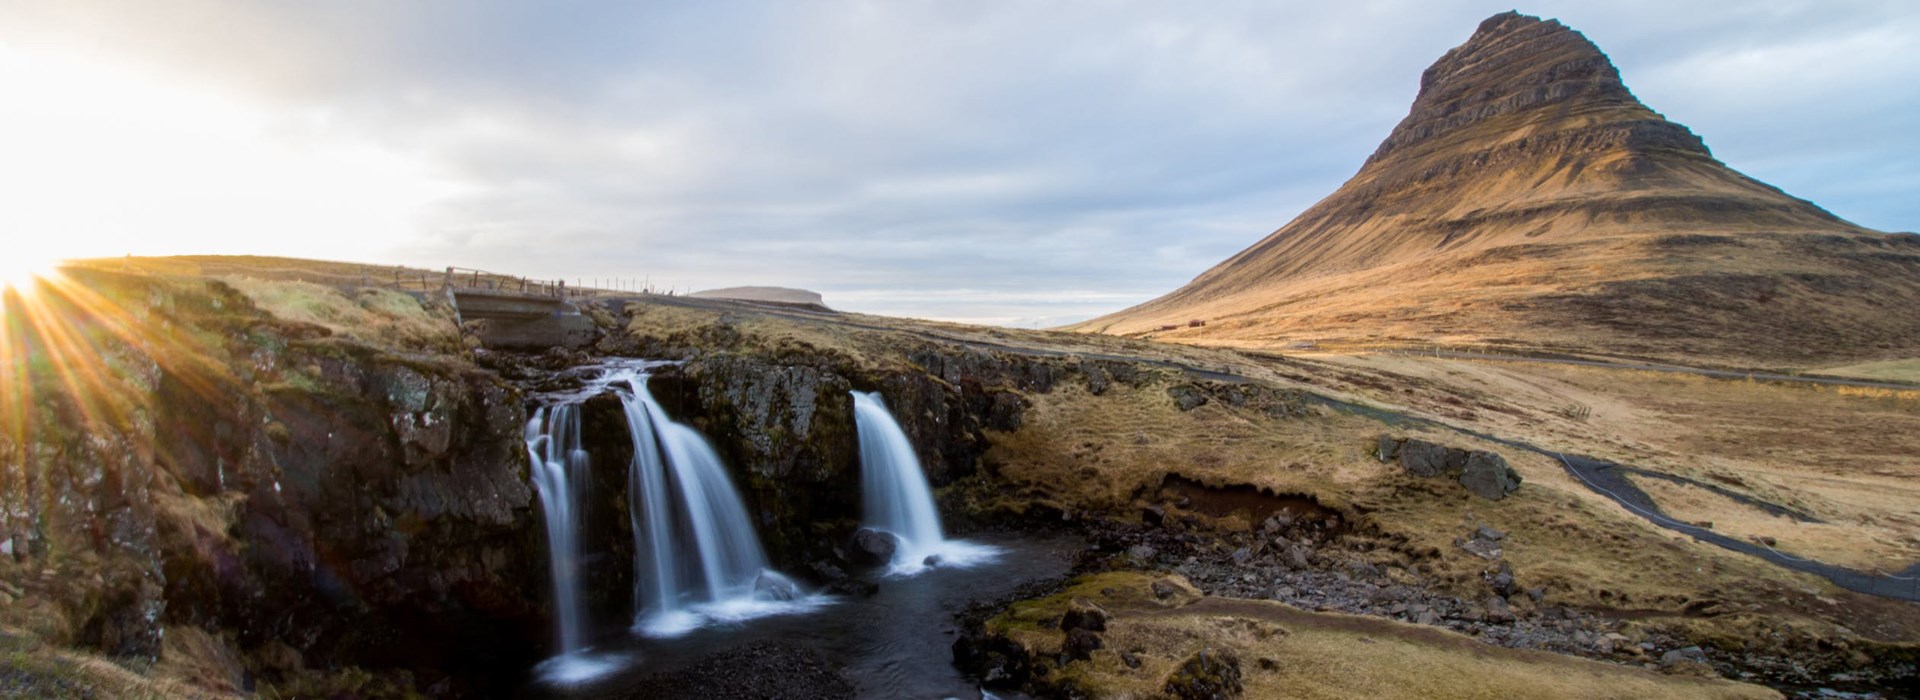 Visiter La montagne de Kirkjufell - Islande